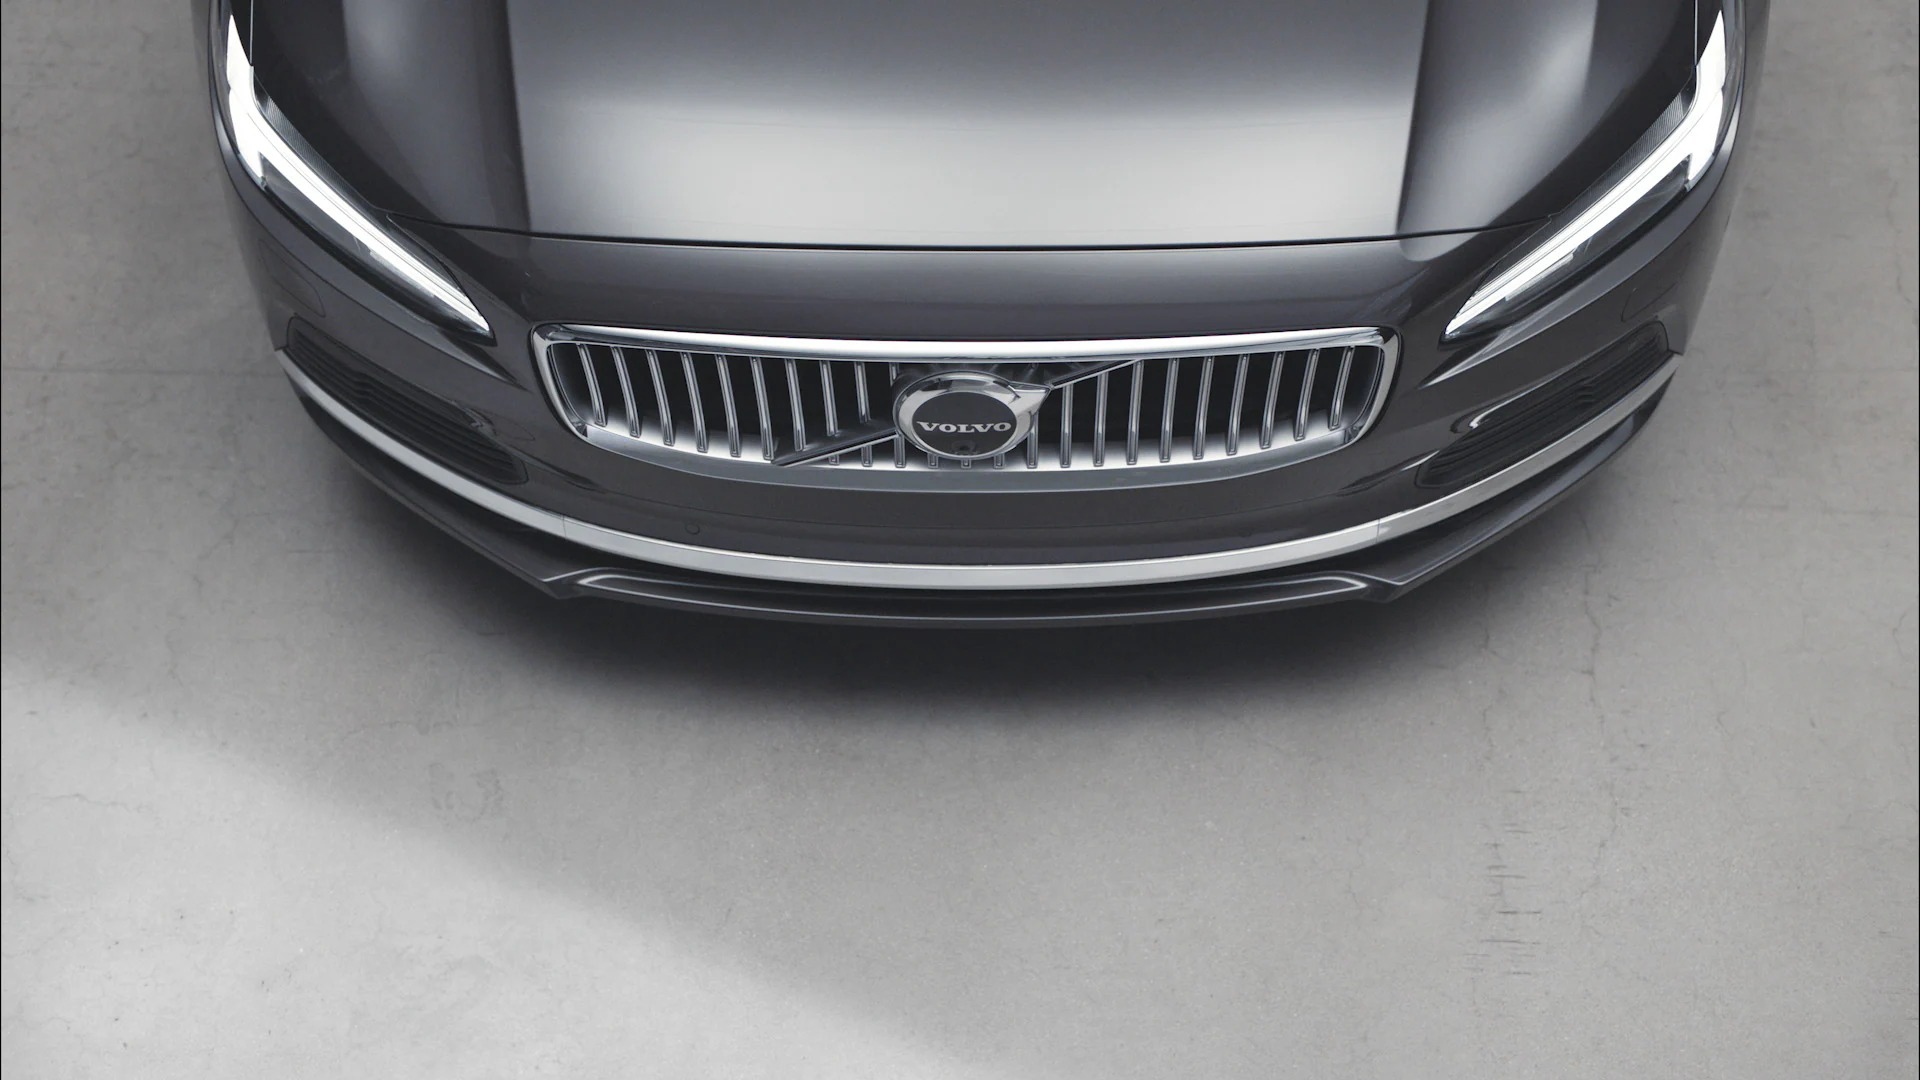 Xe mới của Volvo lộ giá bán trước khi ra mắt